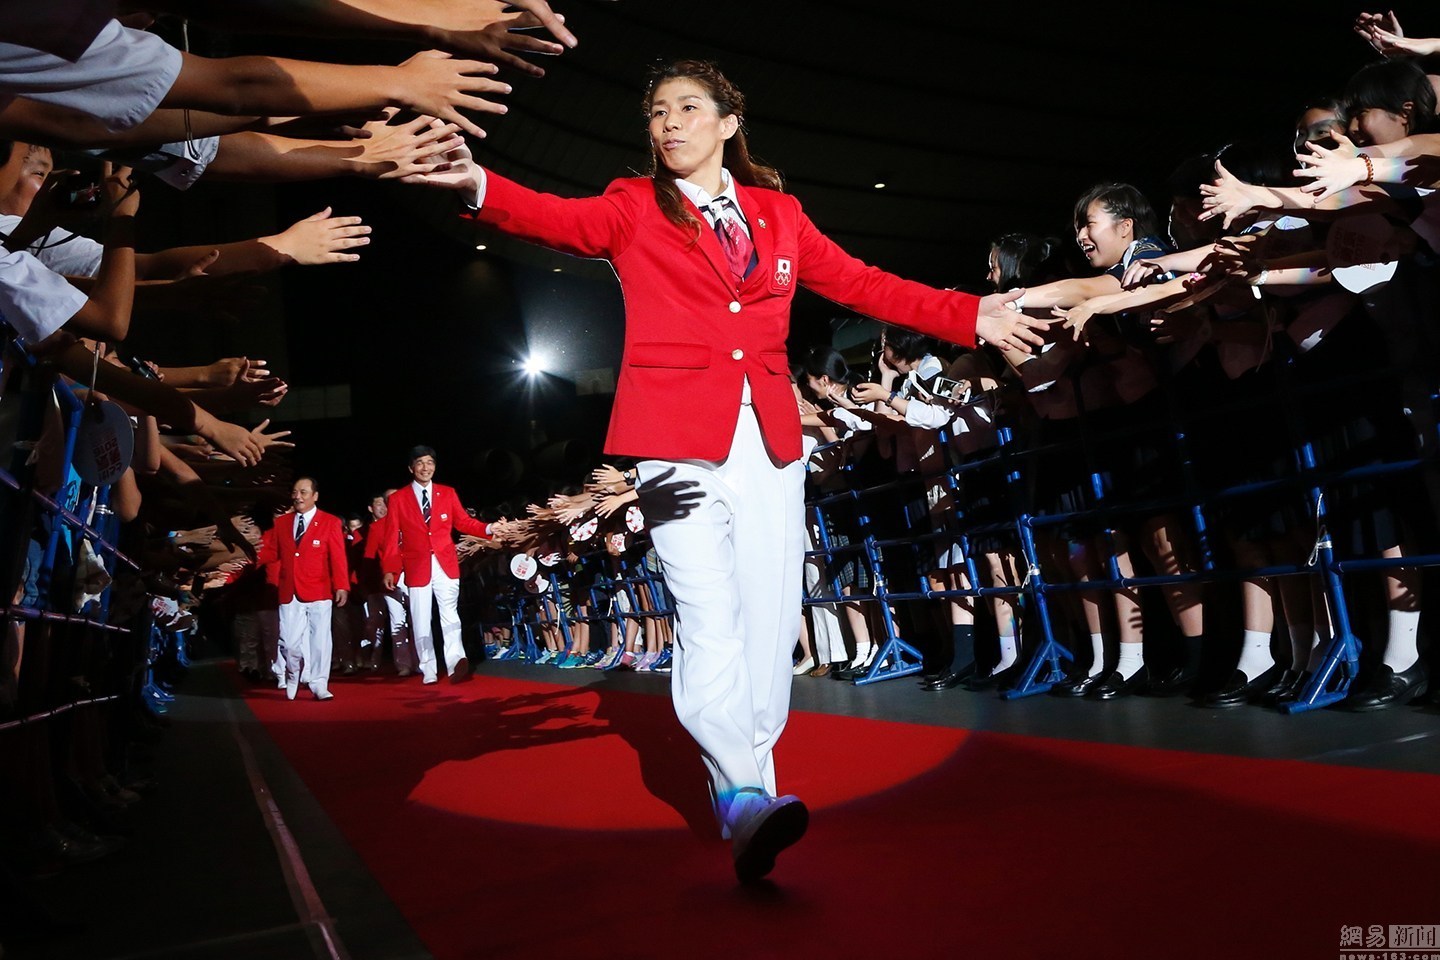 日本举办奥运出征仪式 运动员情绪高昂